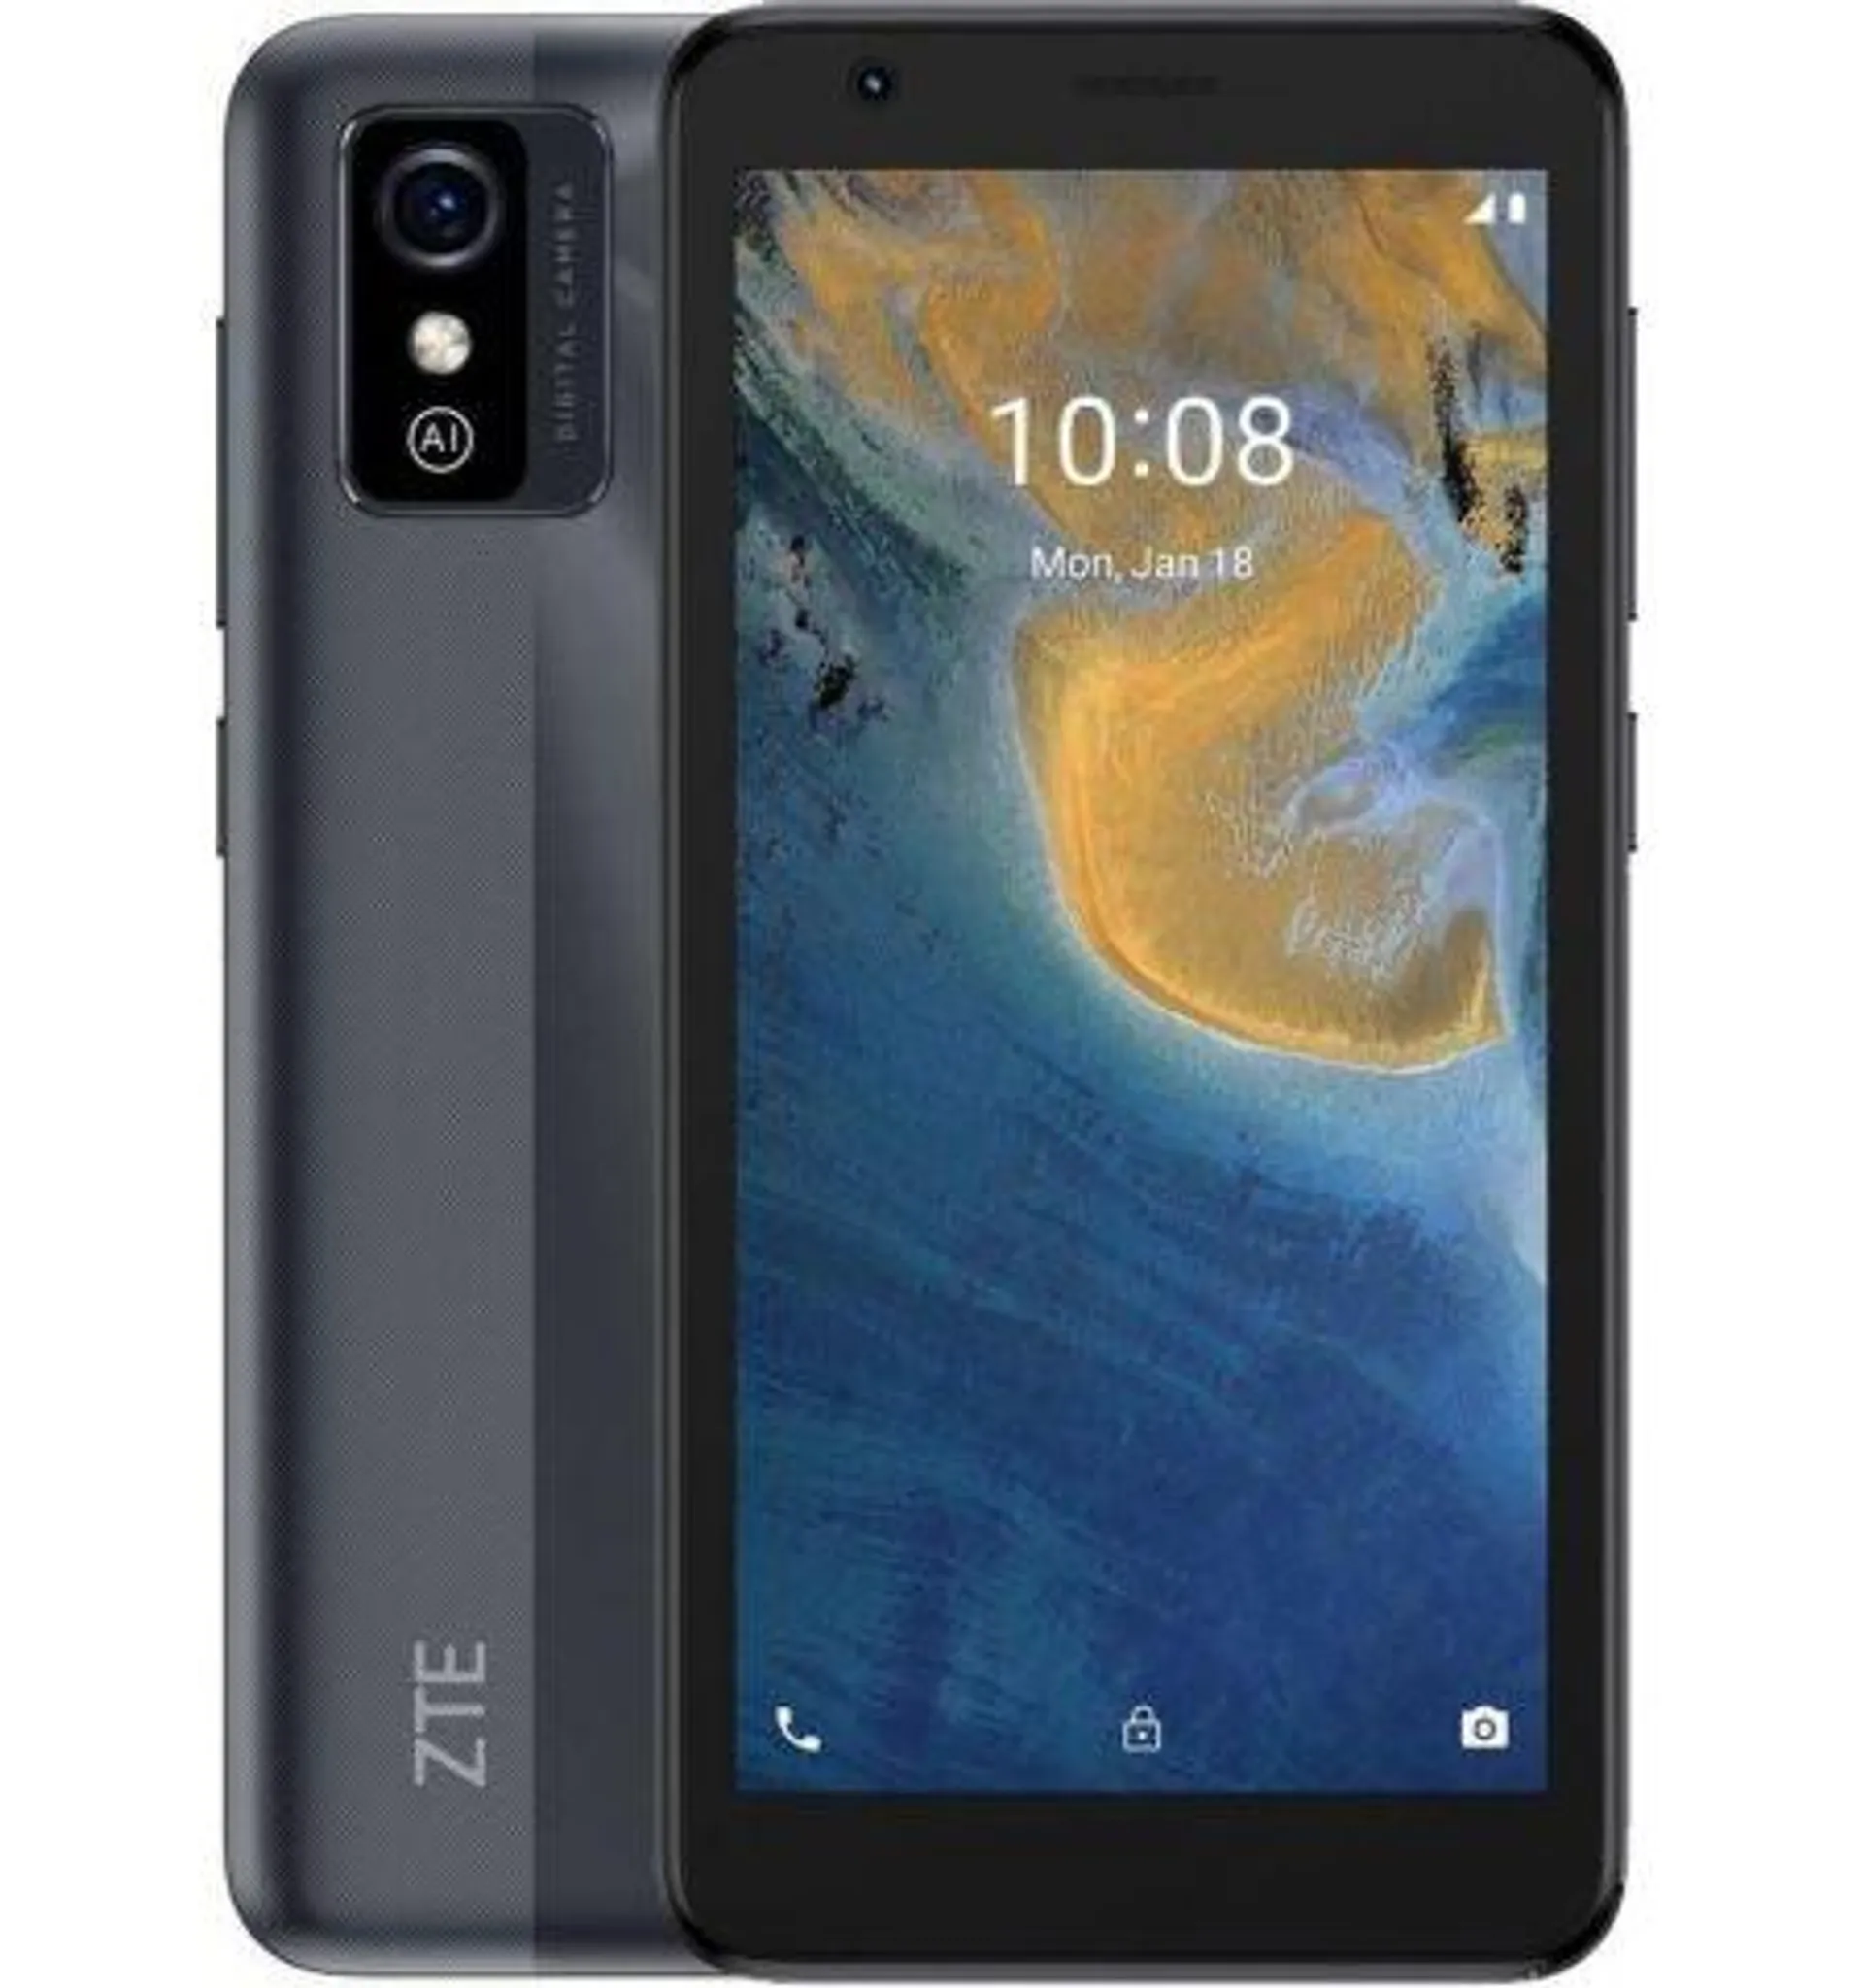 ZTE Blade L9 Smartphone